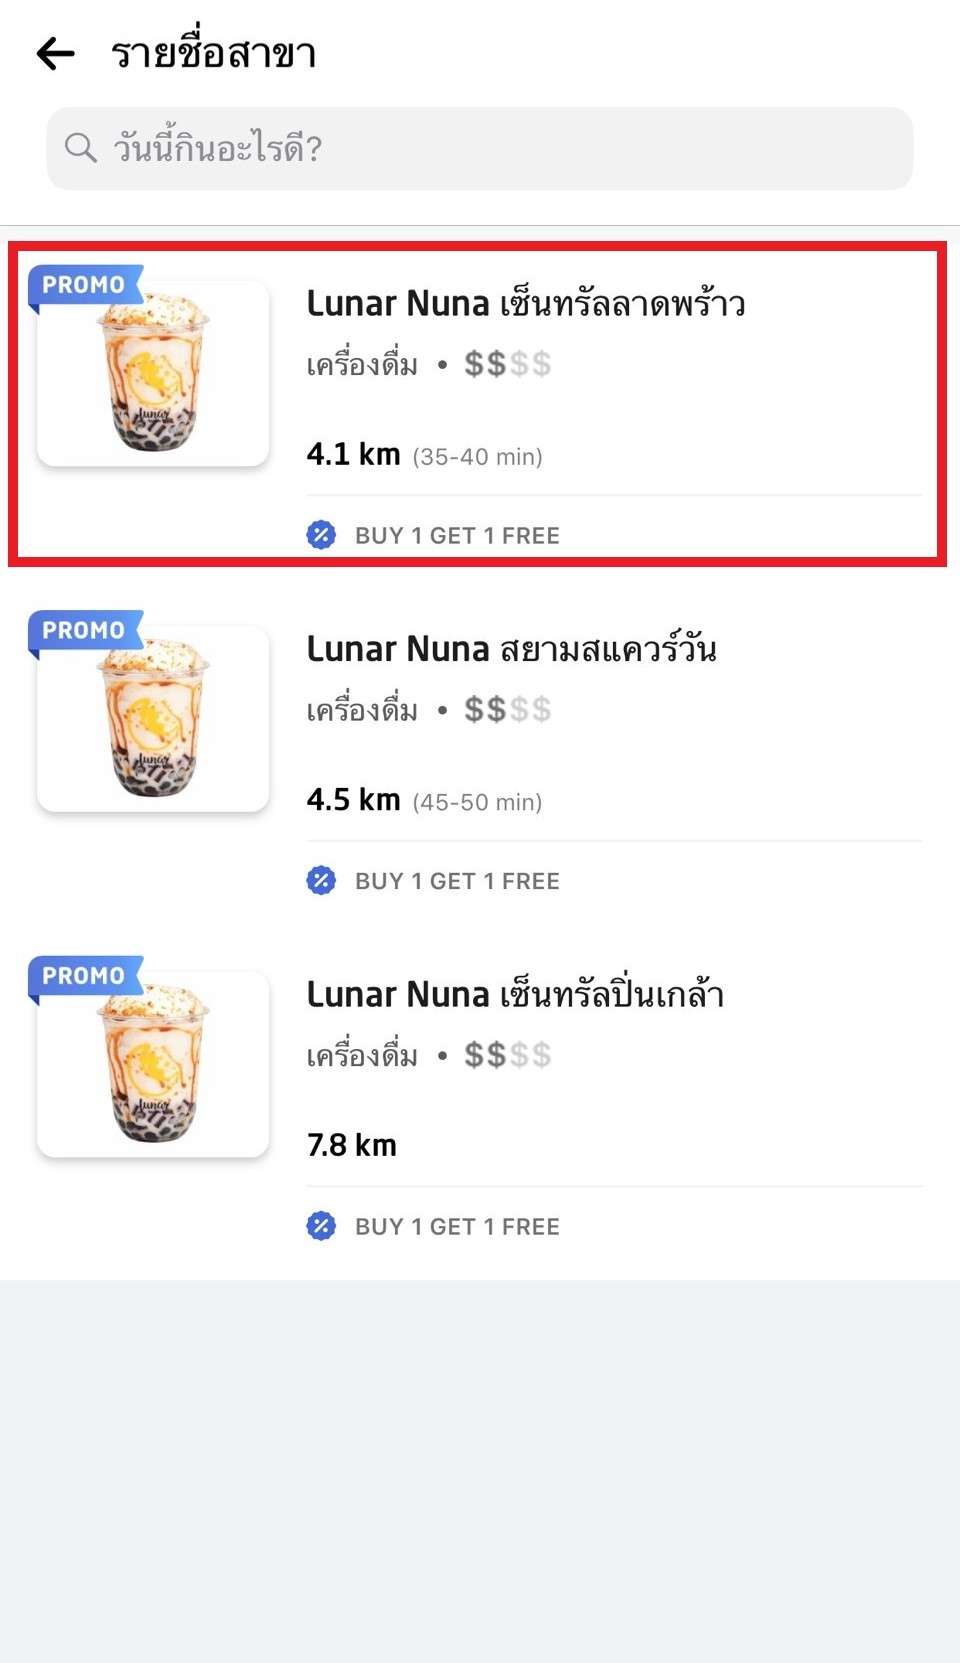 How to order Lunar Nuna